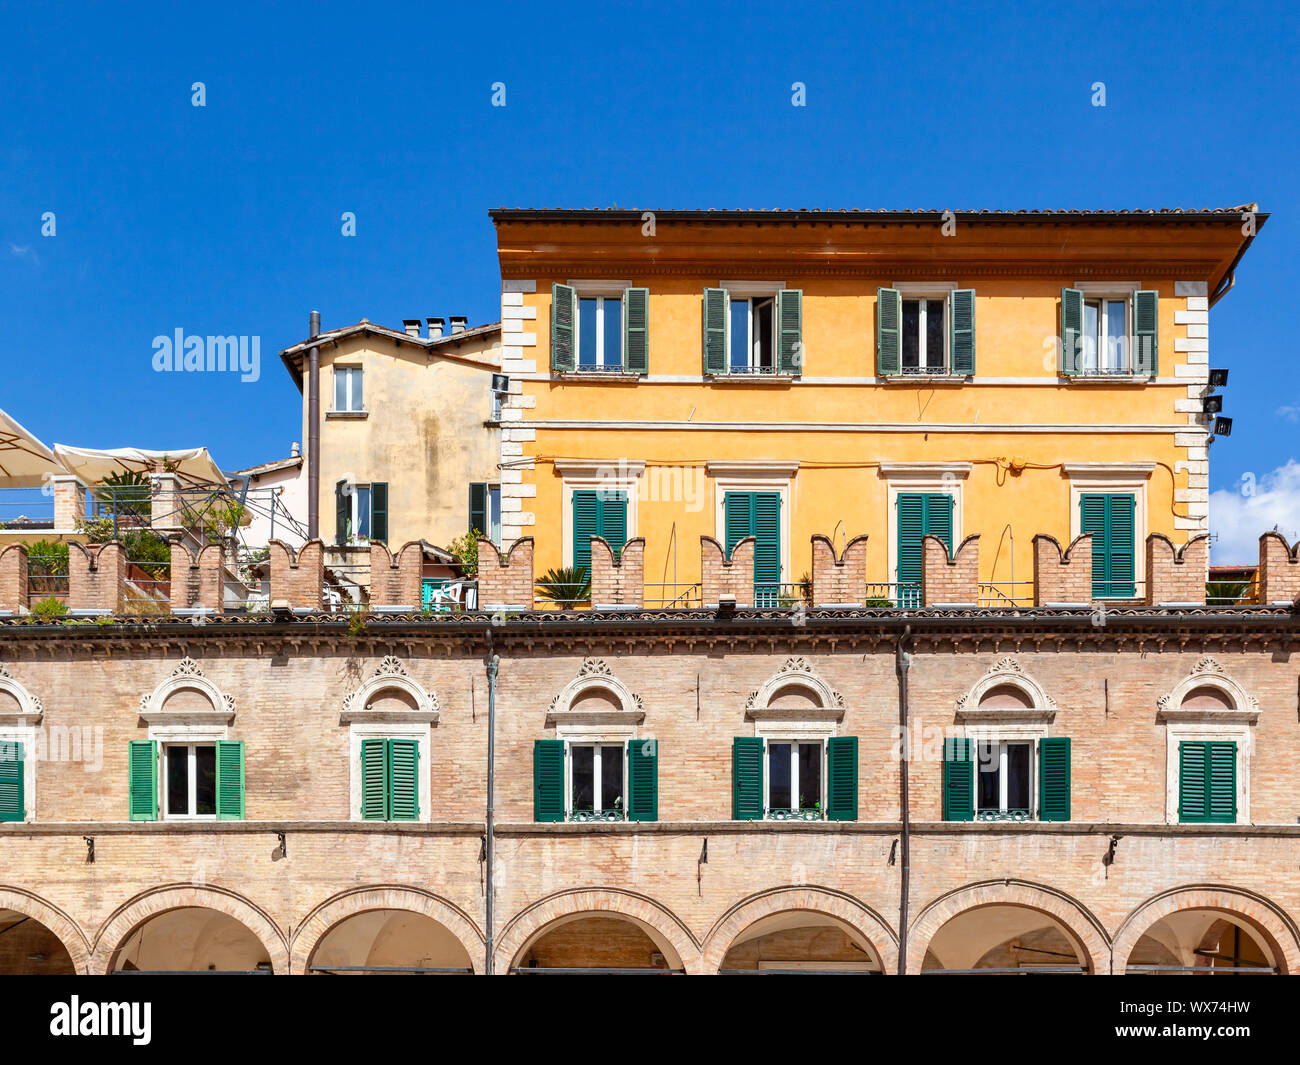 Piazza del Popolo in Ascoli Piceno Italy Stock Photo